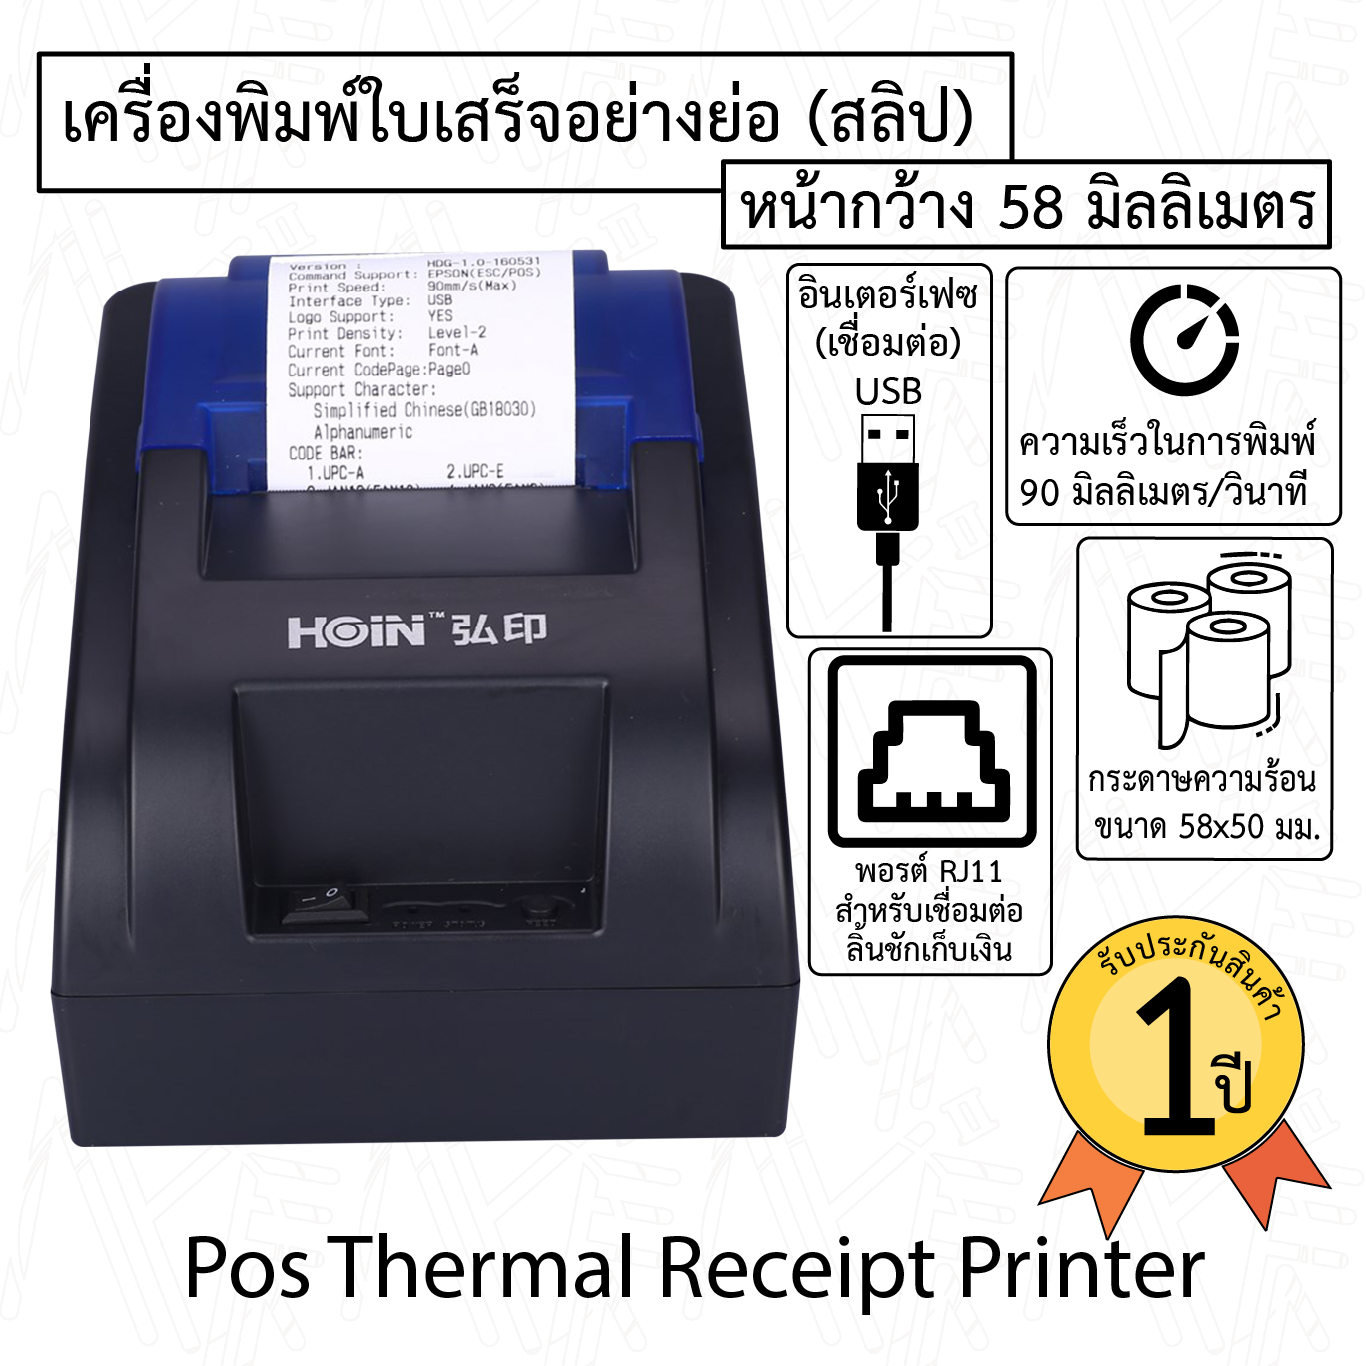 เครื่องพิมพ์ใบเสร็จความร้อน POSPrinter รุ่น HOP58mm พิมพ์ใบเสร็จโดยไม่ต้องเติมน้ำหมึก ปริ้นได้รวดเร็ว แม่นยำ ชัดเจน สะดวกสบาย